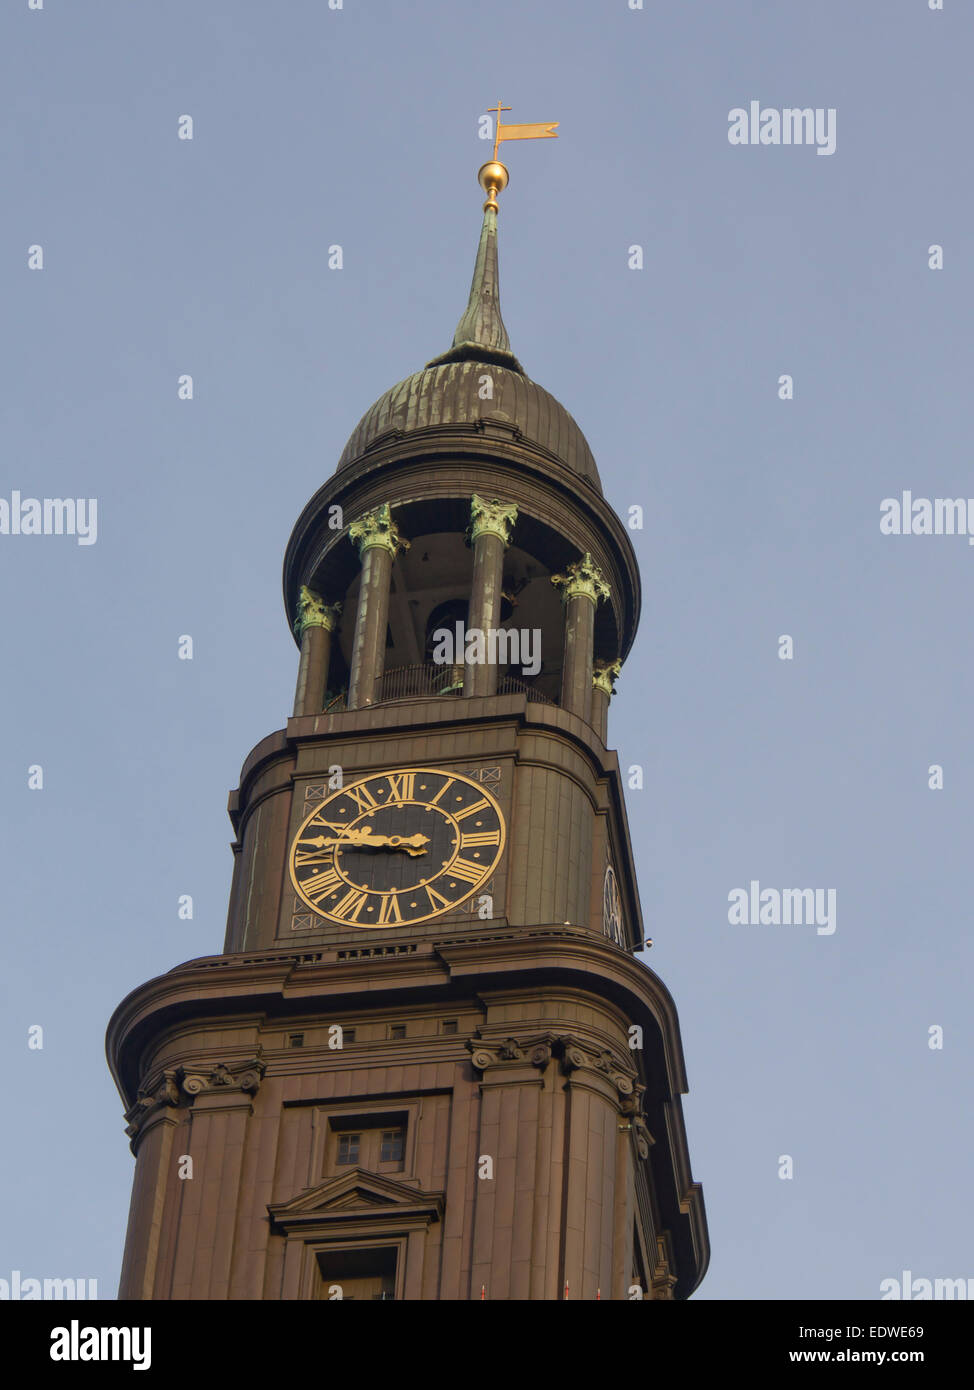 Chiesa di St. Michael ( Hauptkirche Sankt Michaelis) coll. Michel, in Amburgo Germania, parte superiore del campanile con orologio contro il cielo blu Foto Stock